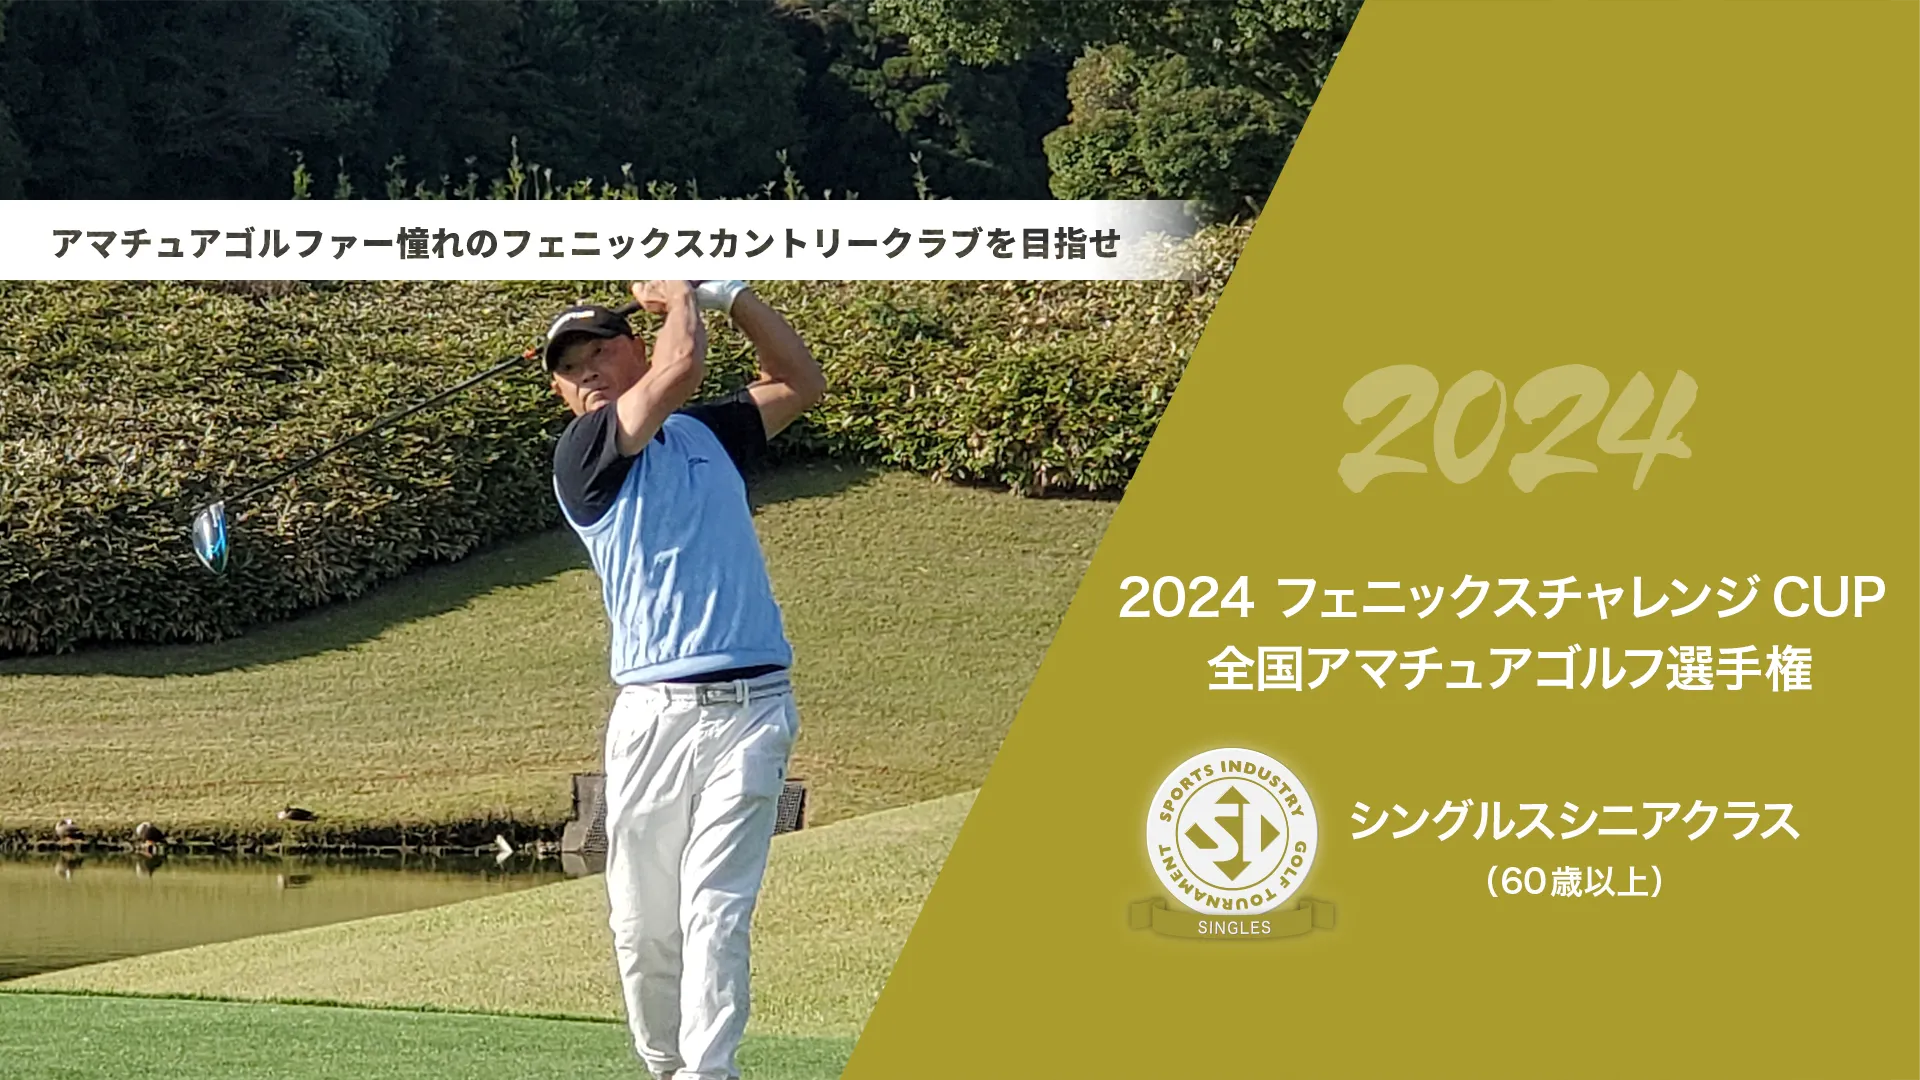 2024フェニックスチャレンジCUP_全国アマチュアゴルフ選手権_シングルスシニアクラス(60歳以上)